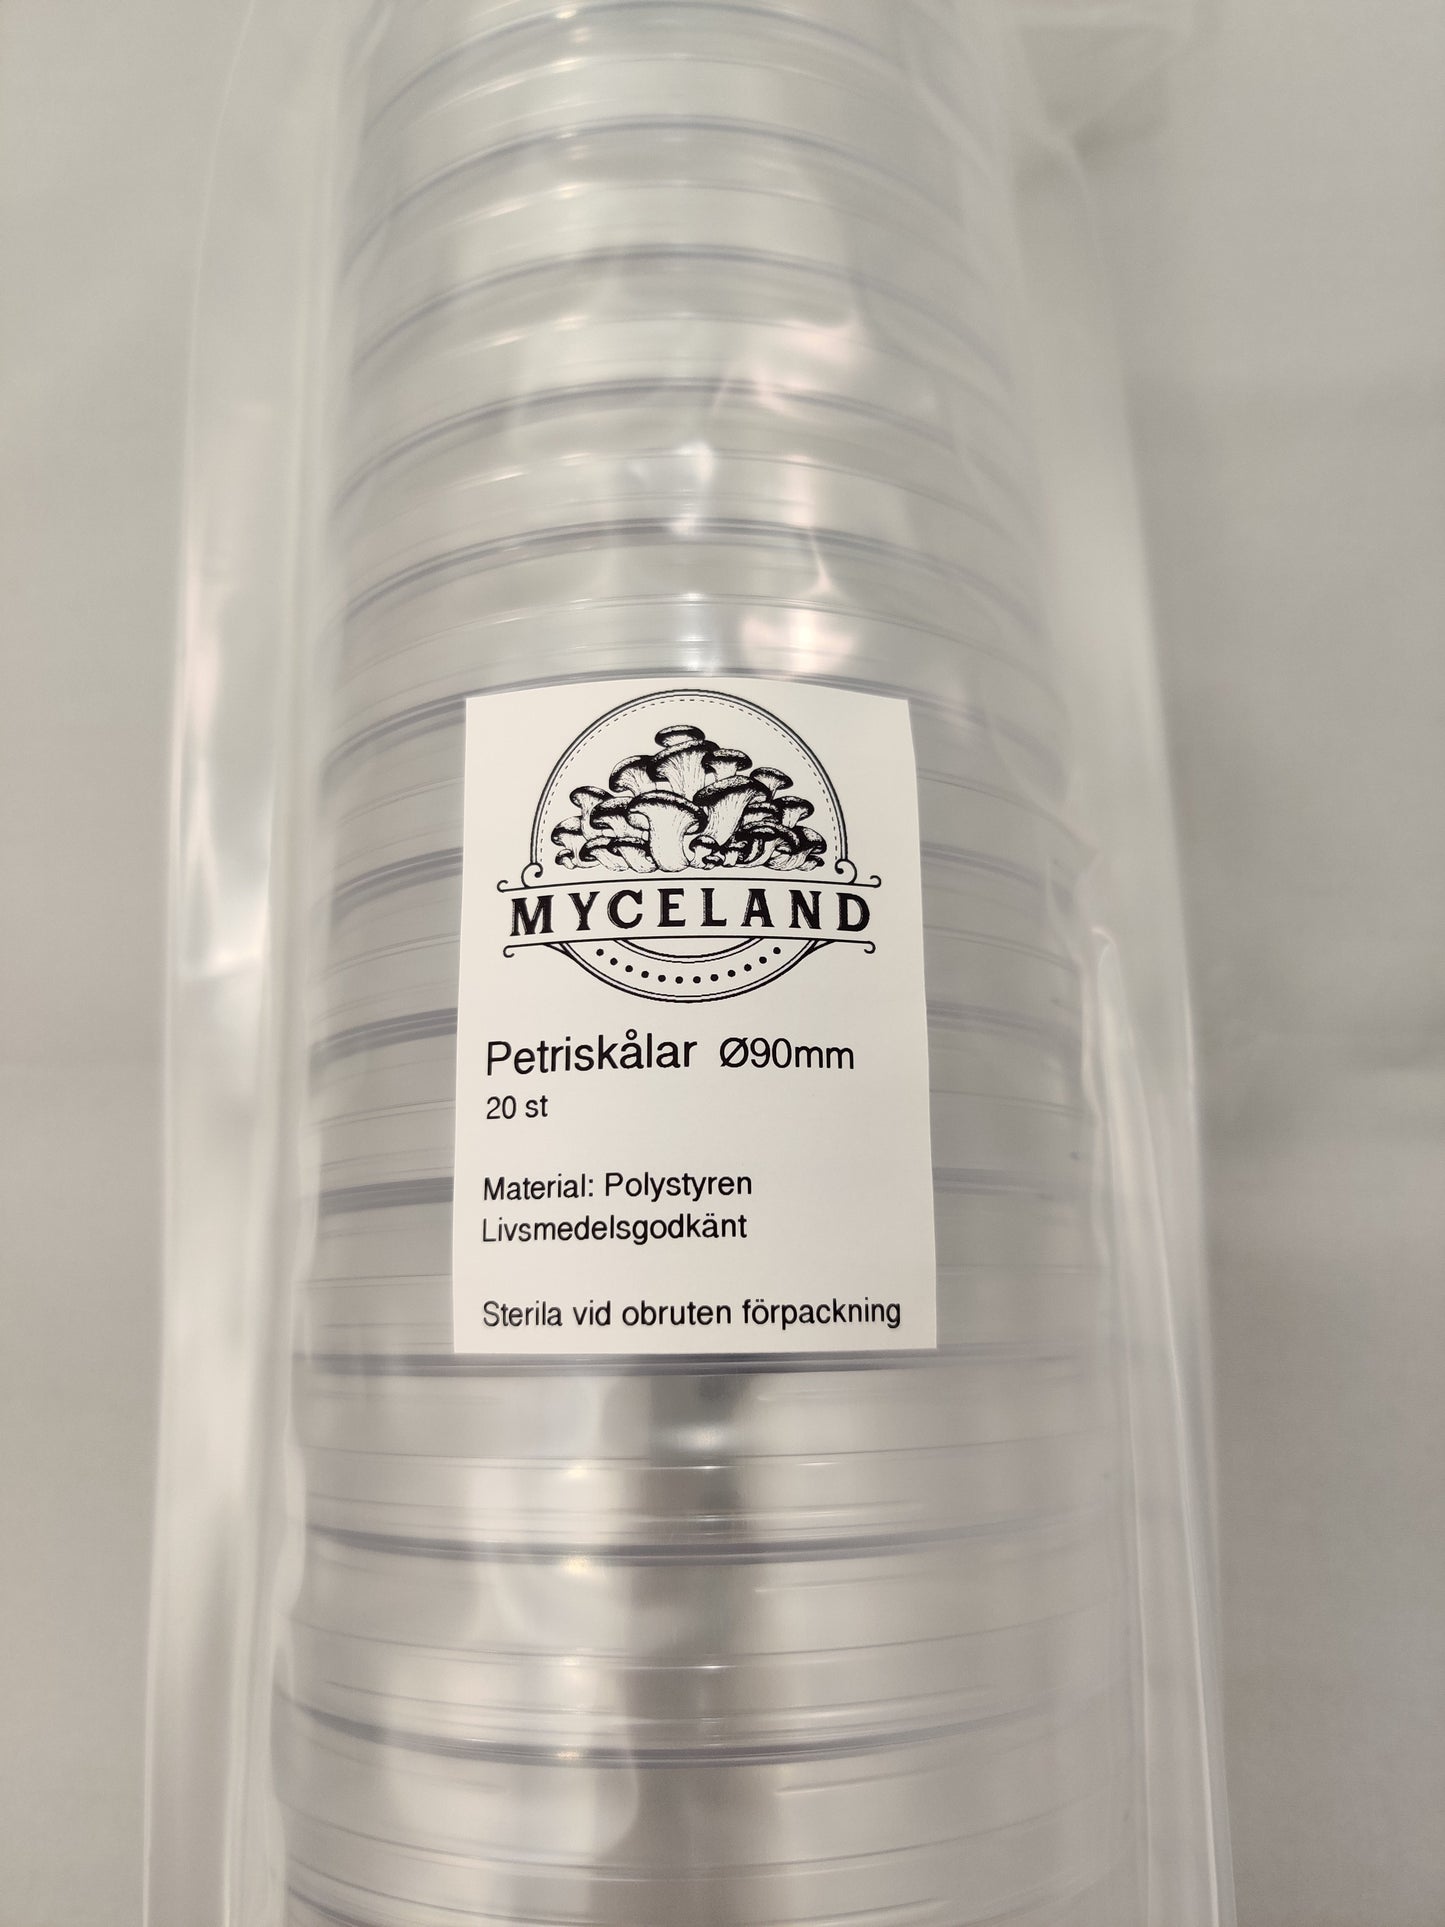 Petriskålar (20 pack) - Myceland - Svampodling & mykologi